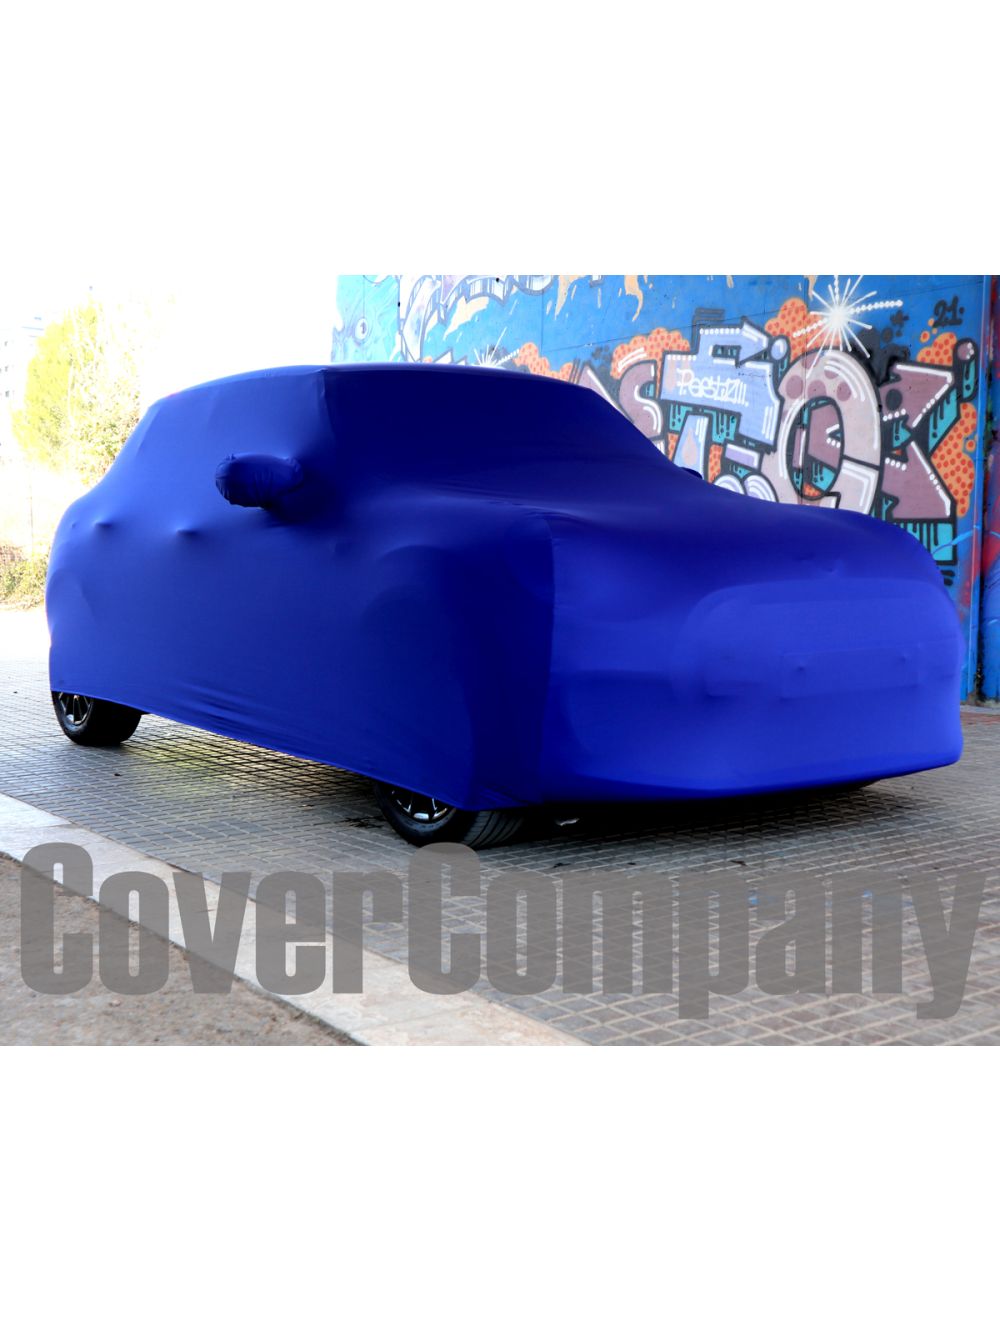 Custom made Mini Car Cover - Indoor Platinum Range